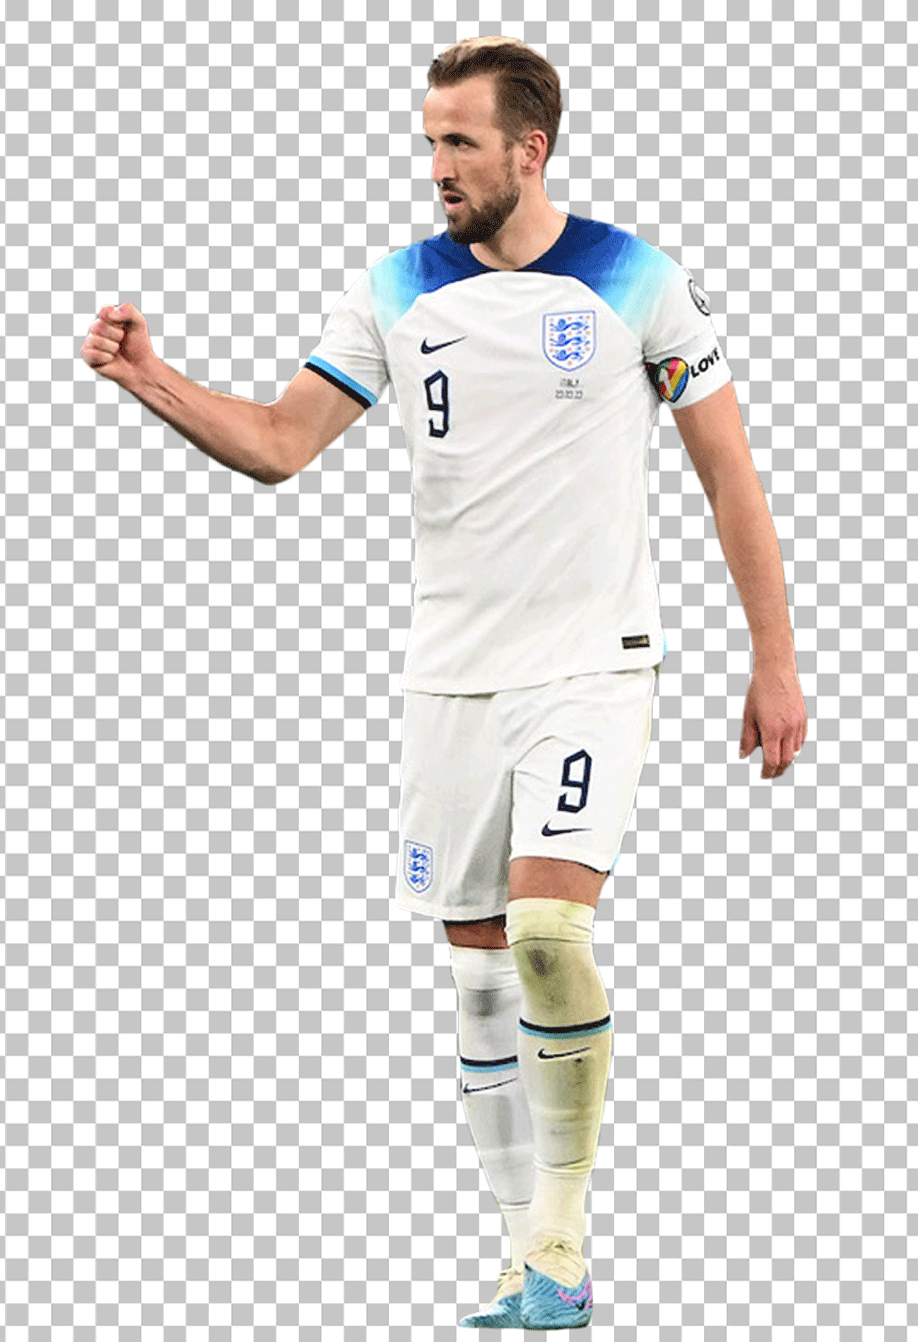 Harry Kane wearing England jersey PNG image